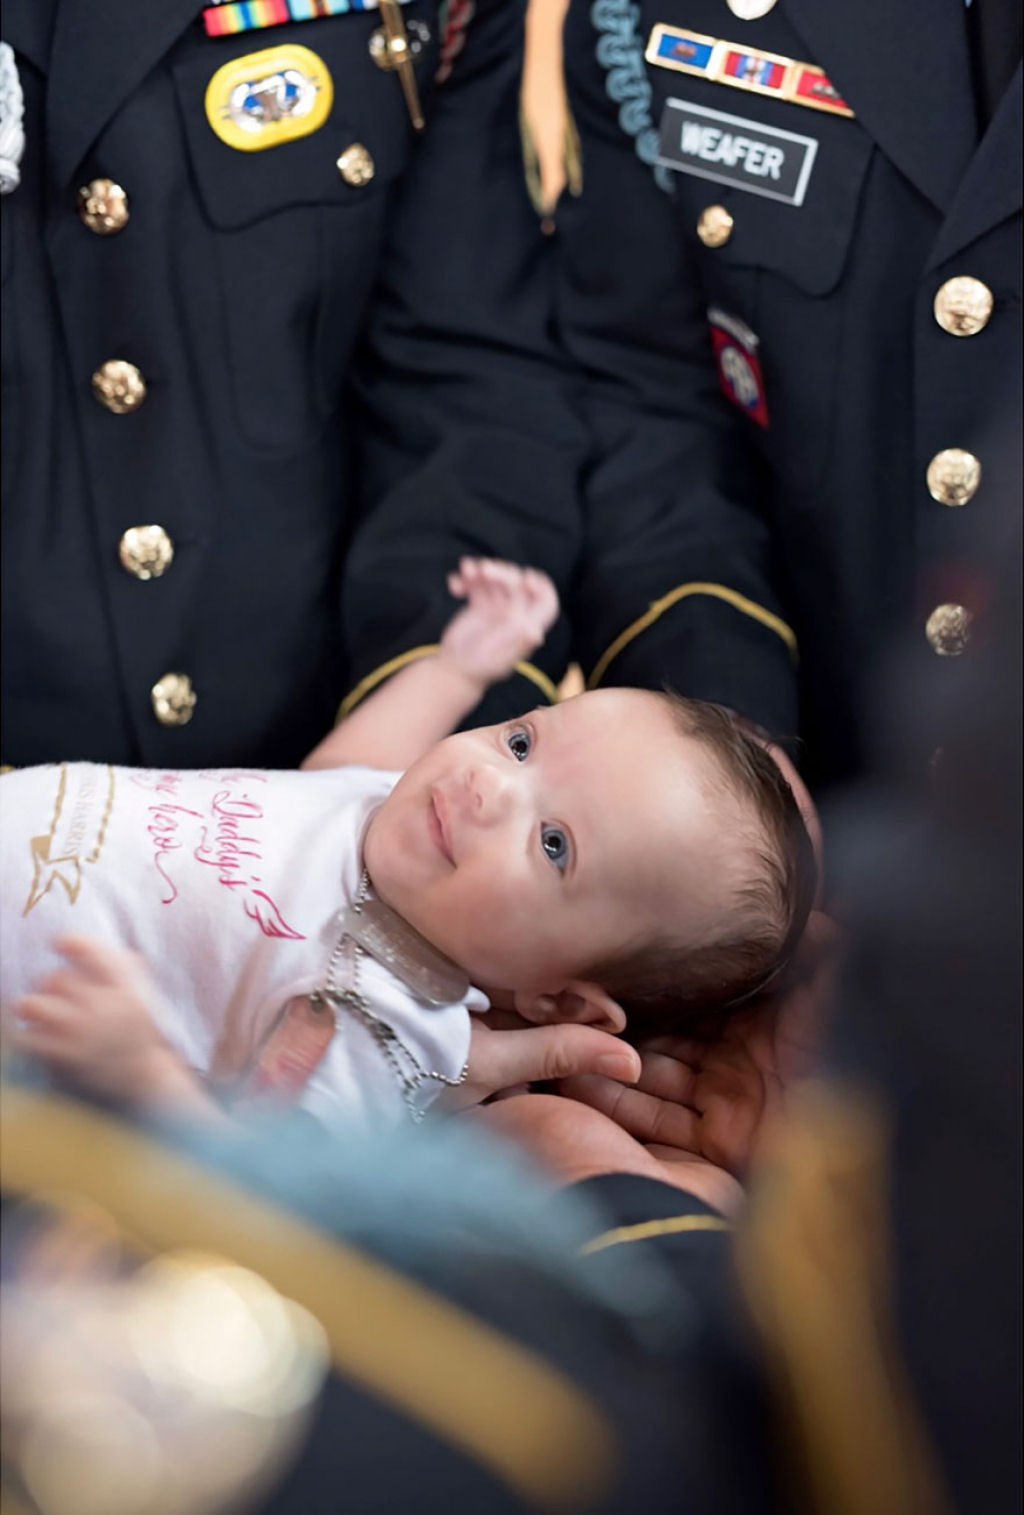 Uma sesso fotogrfica comovente do beb, de um soldado cado, e seus padrinhos do exrcito 10